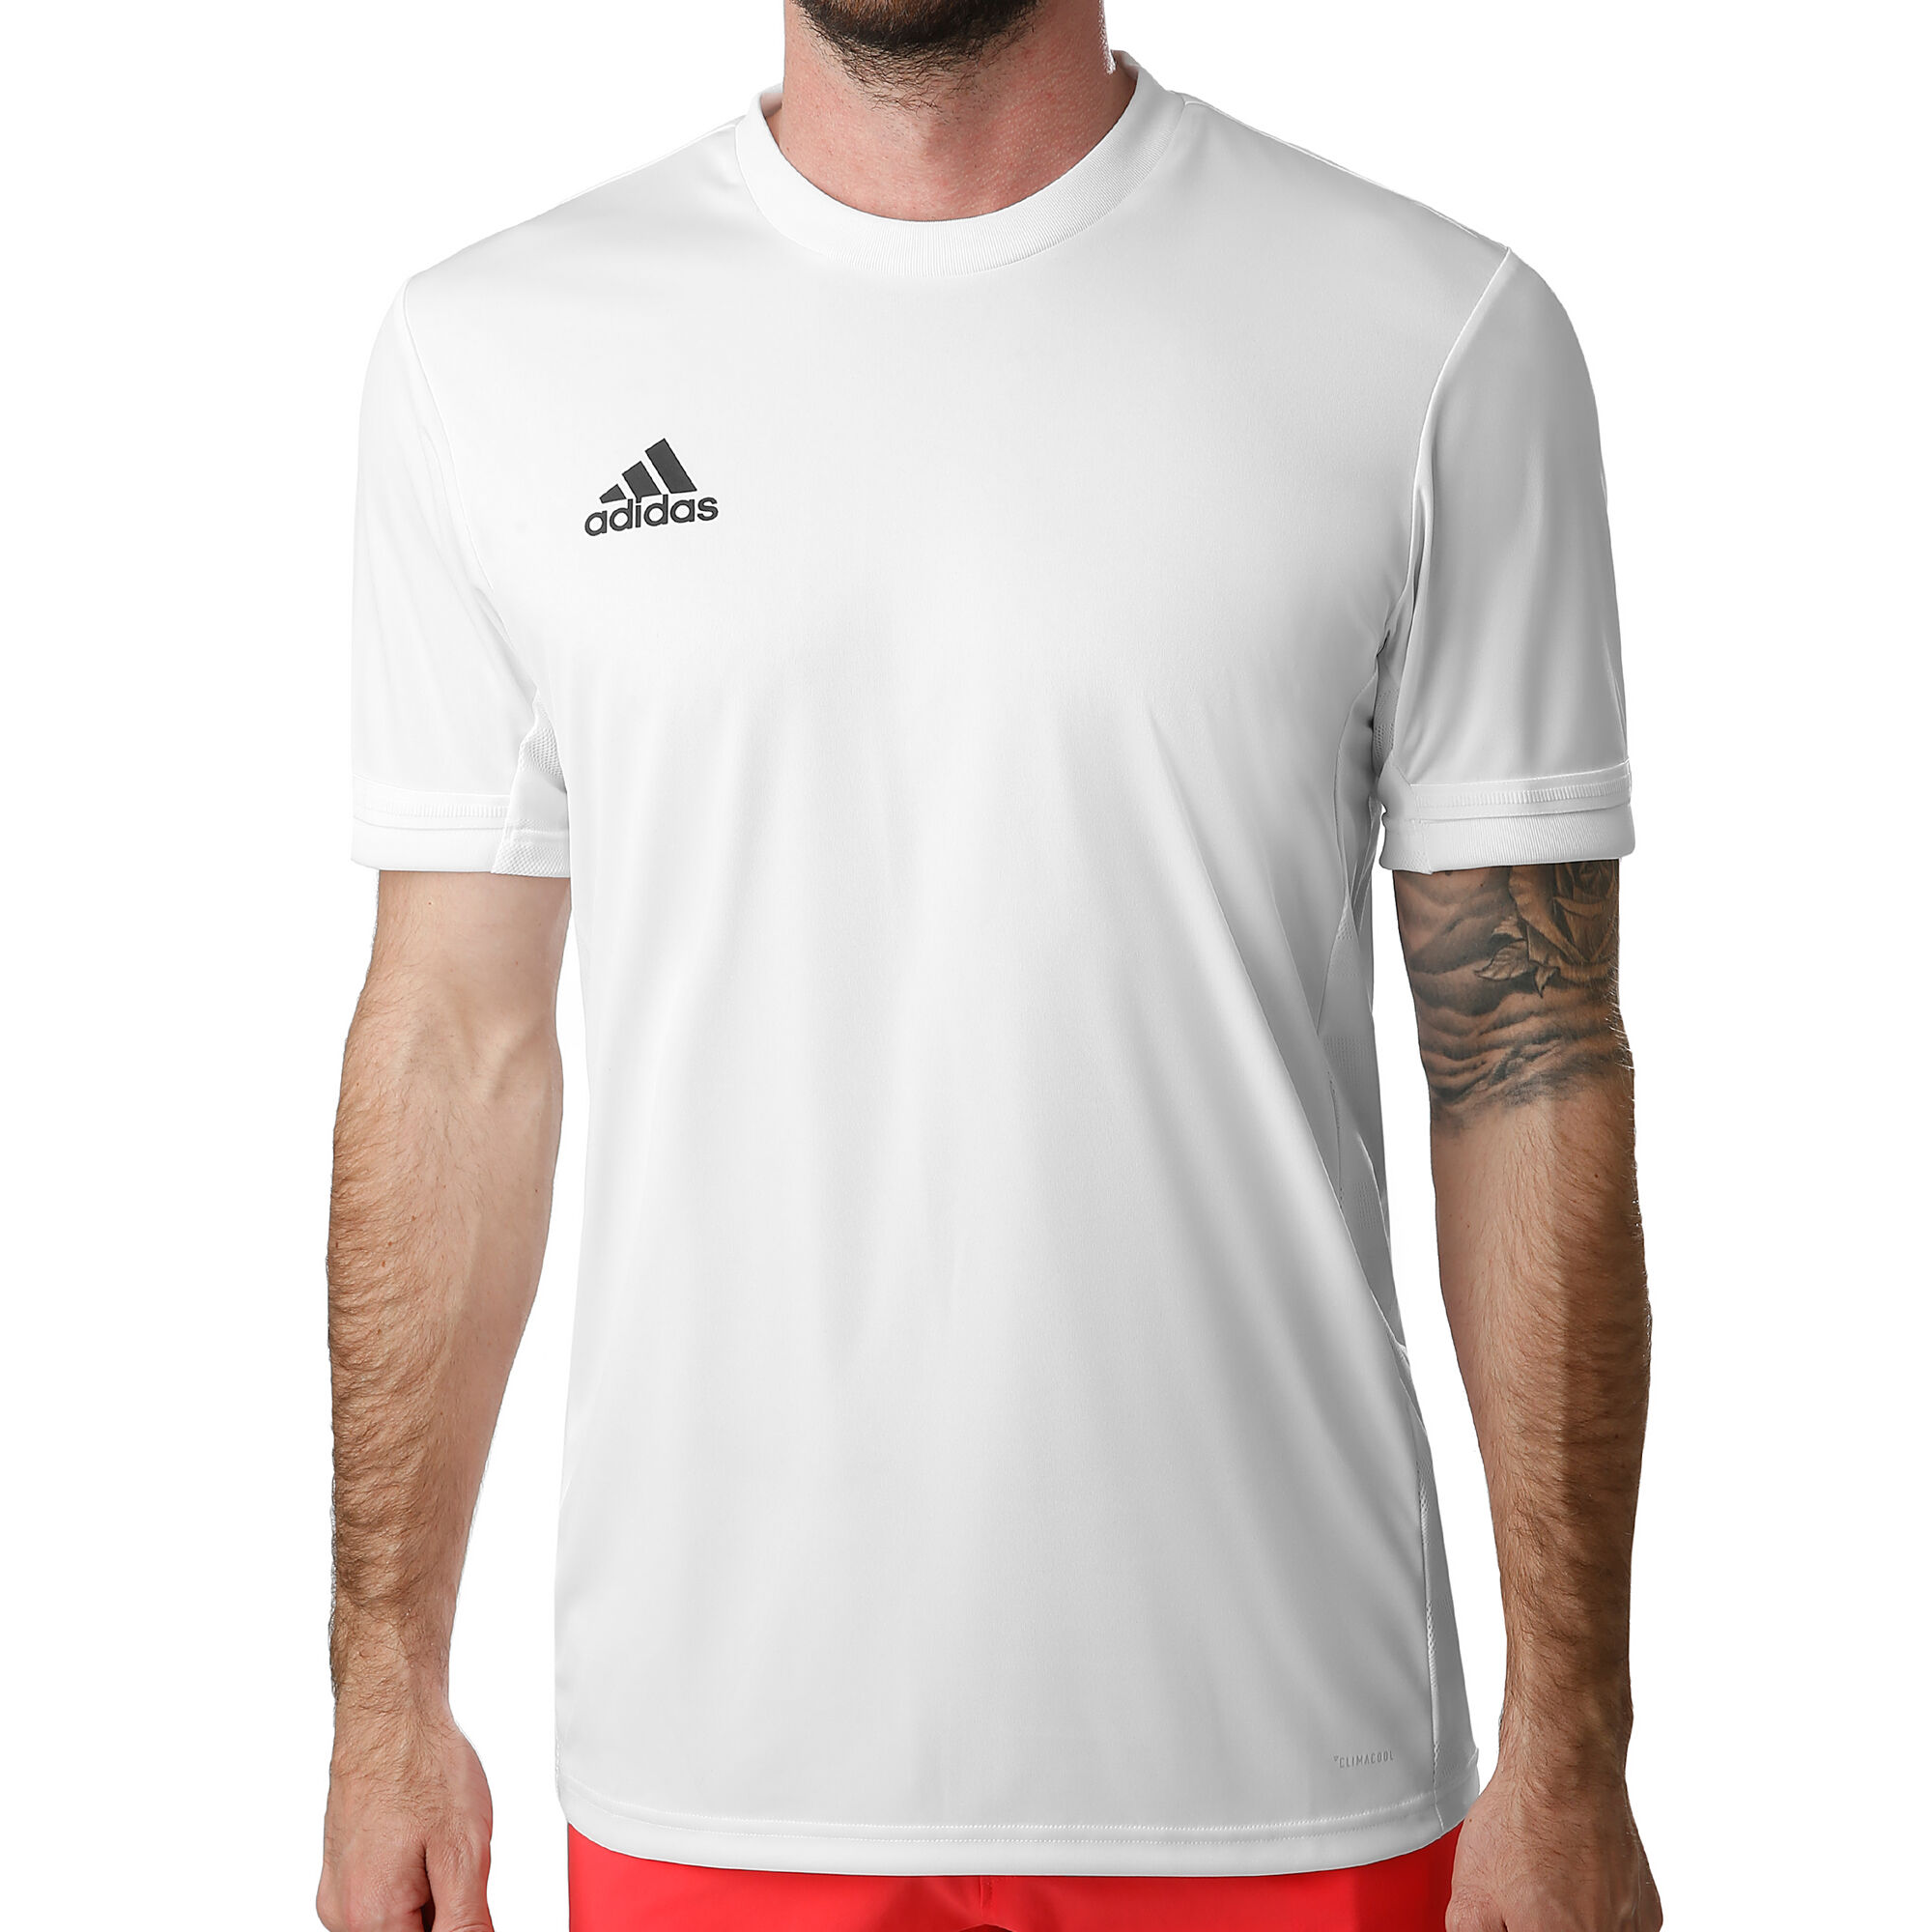 overschot Ga naar beneden in de rij gaan staan buy adidas T19 T-Shirt Men - White, Black online | Tennis-Point